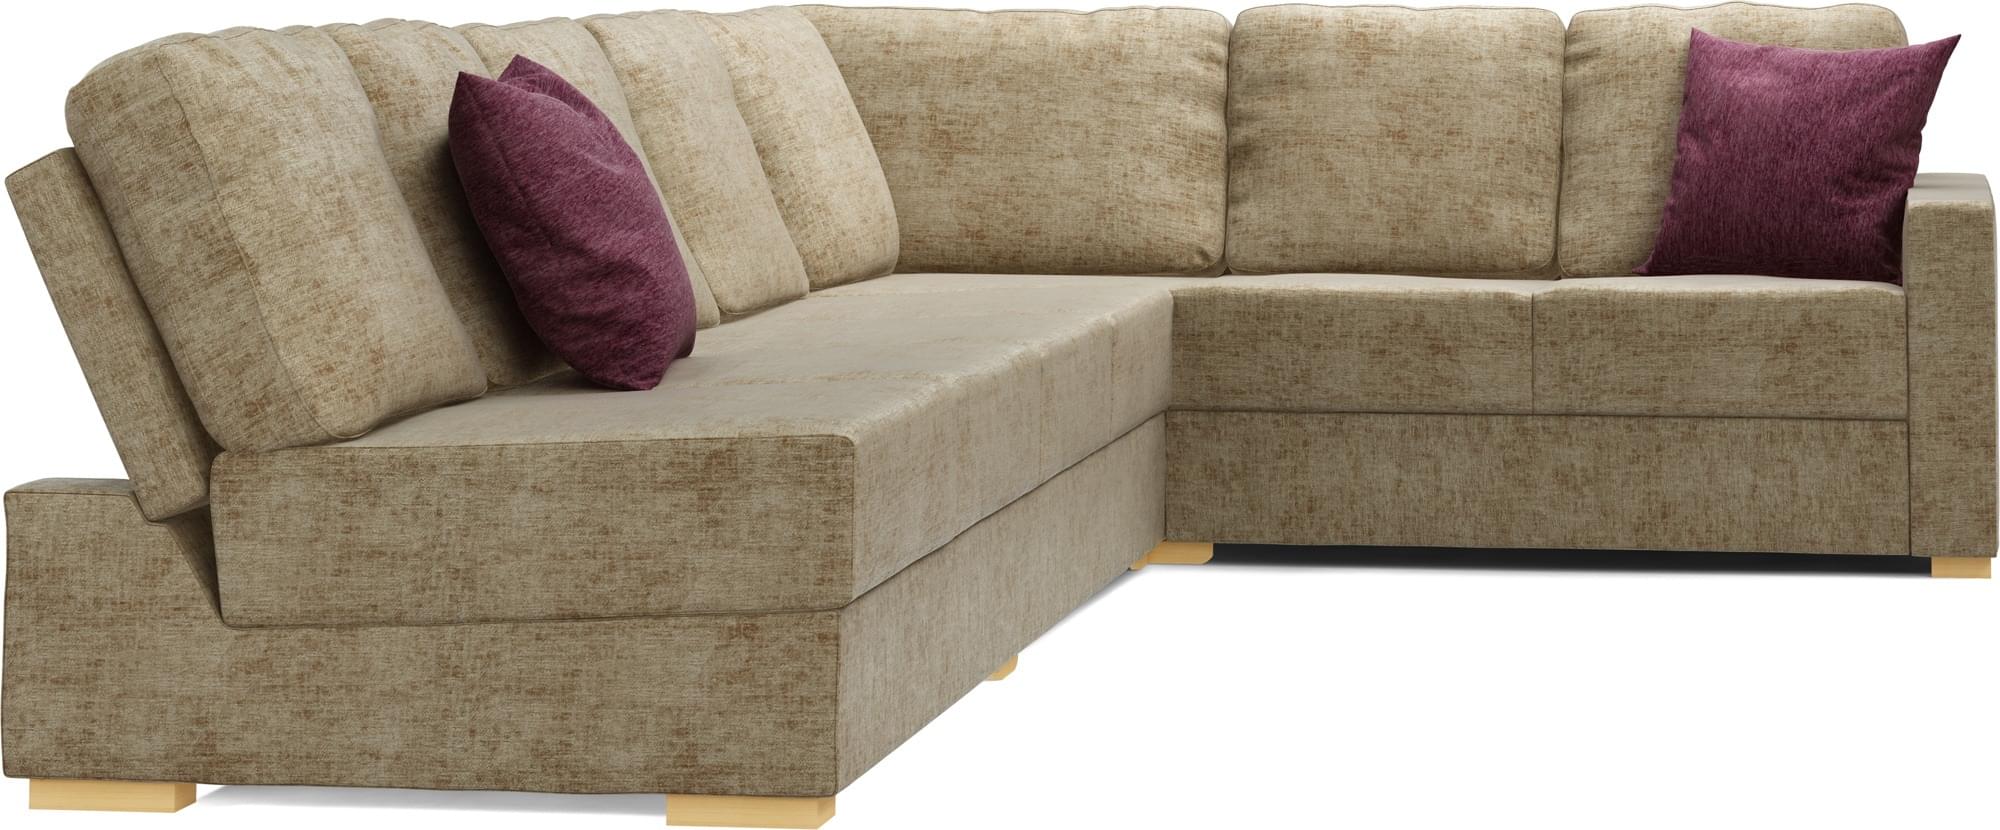 Lear Armless 5X3 Single Sofa Bed